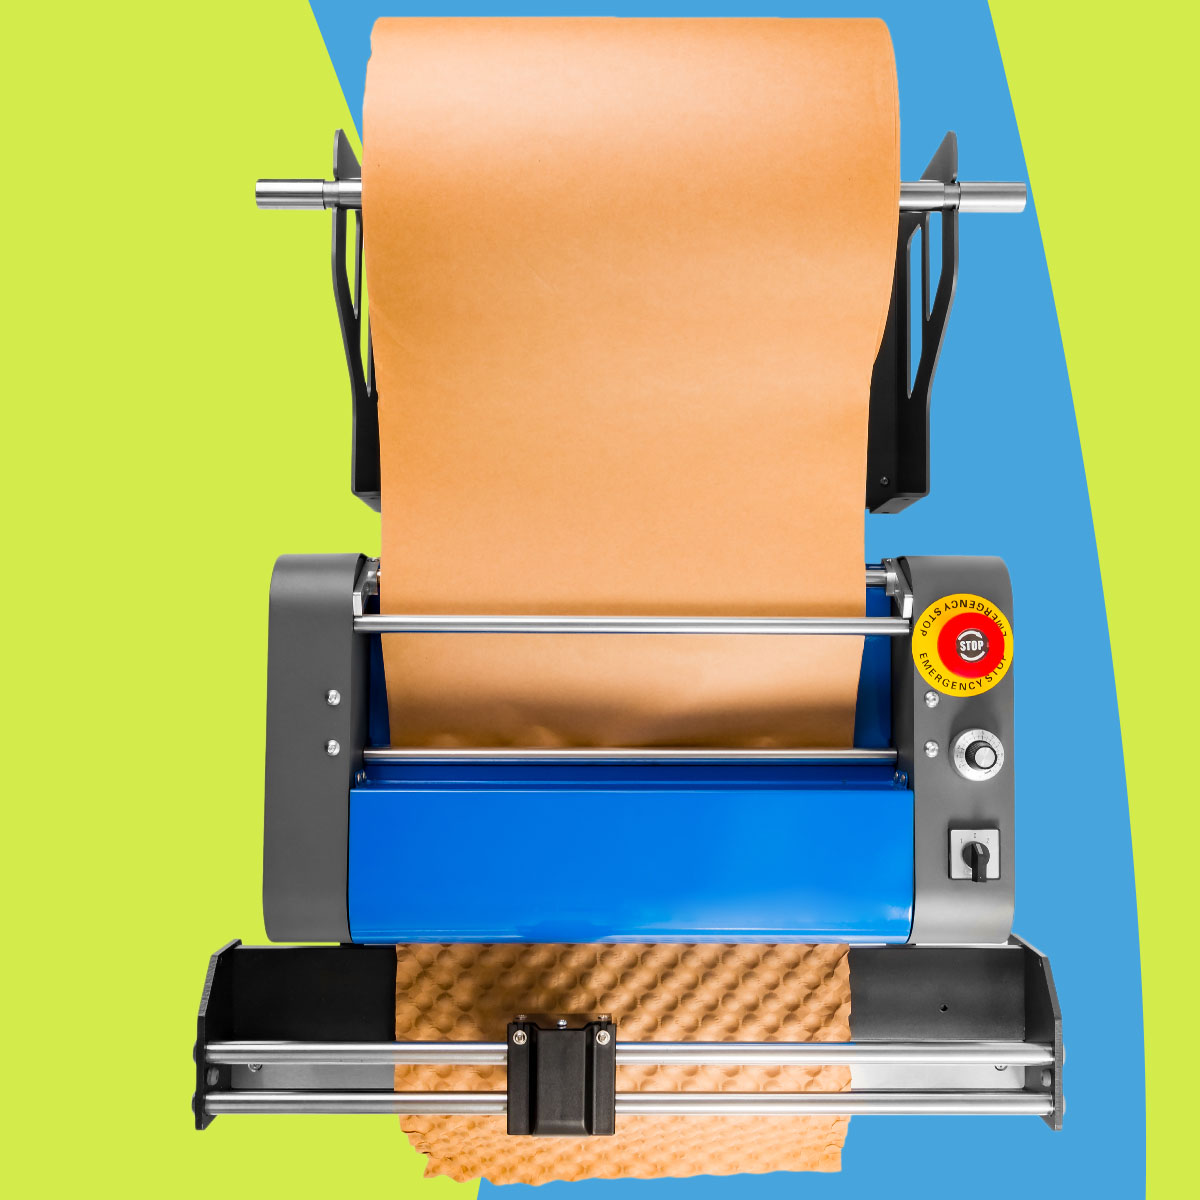 maszyna do papieru bąbelkowego, Bublaki BM-PB01, maszyna do produkcji papieru bąbelkowego, maszyna do zabezpieczania przesyłek, automat do papieru bąbelkowego, ekologiczne pakowanie produktów, innowacyjne pakowanie bąbelkowe, maszyna pakownicza do kartonów, recykling kartonów maszyna, maszyna z wbudowaną gilotyną do papieru, wysokowydajna maszyna pakownicza, maszyna pakownicza z regulacją prędkości, profesjonalne systemy pakowania, wypełniacz paczek, papier bąbelkowy, papier pakowy, maszyna do wypełniaczy paczek, urządzenie do papieru bąbelkowego, producent papieru bąbelkowego, papier bąbelkowy do pakowania, maszyna do papieru do pakowania.